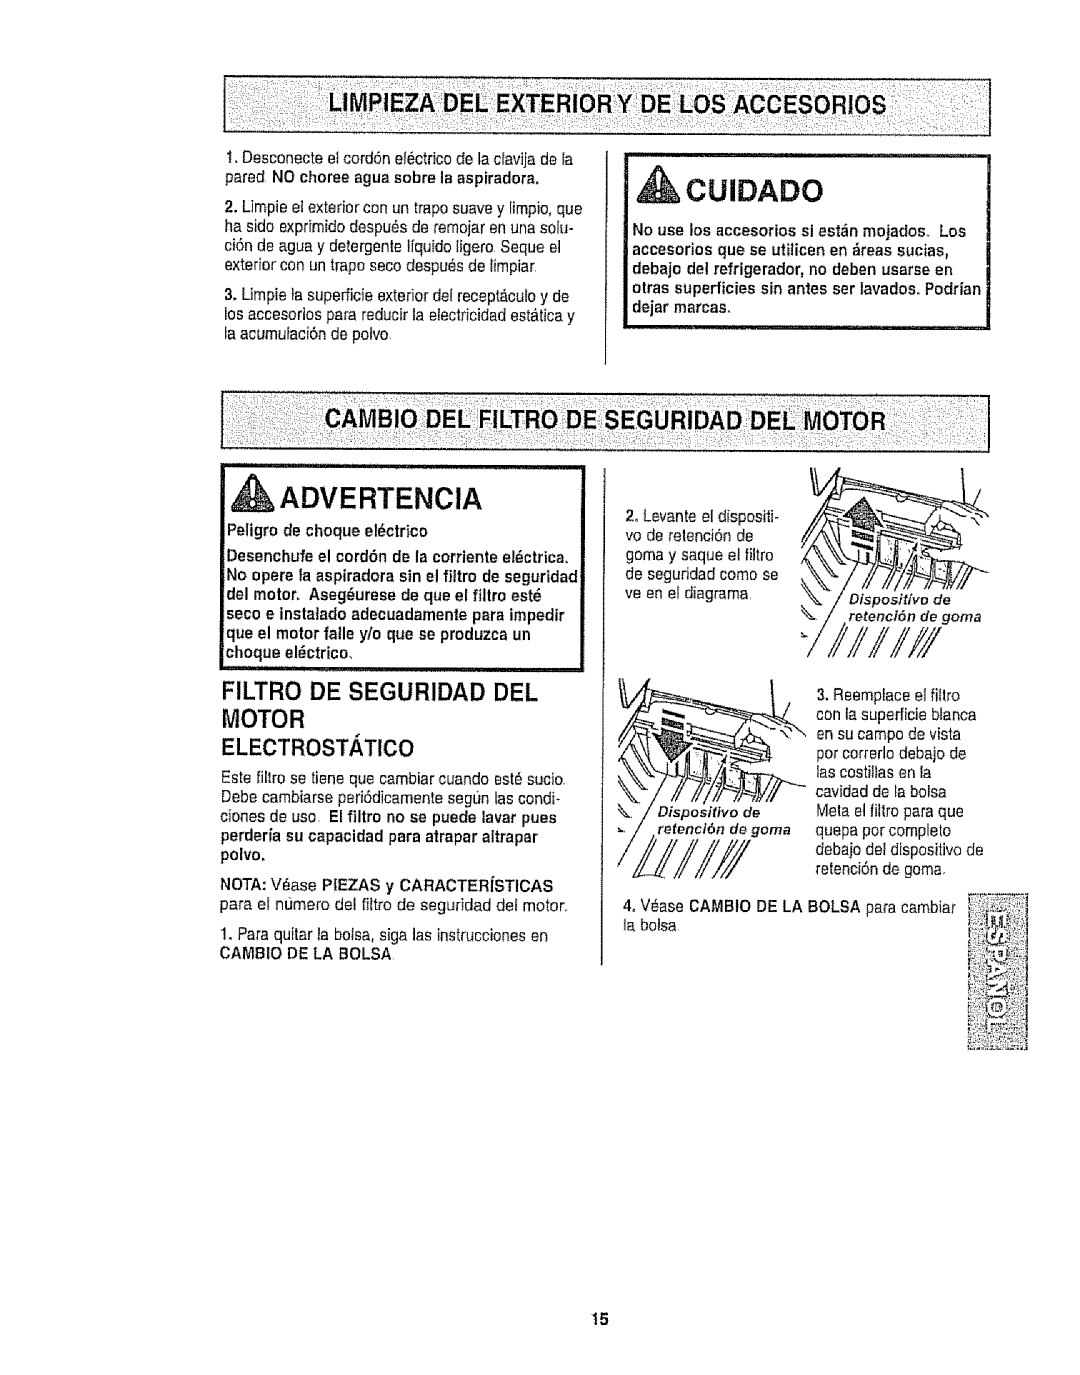 Kenmore 116.25812 owner manual FILTRO DE SEGURIDAD DEL MOTOR ELECTROSTATlCO, Cuidado, Advertencia 